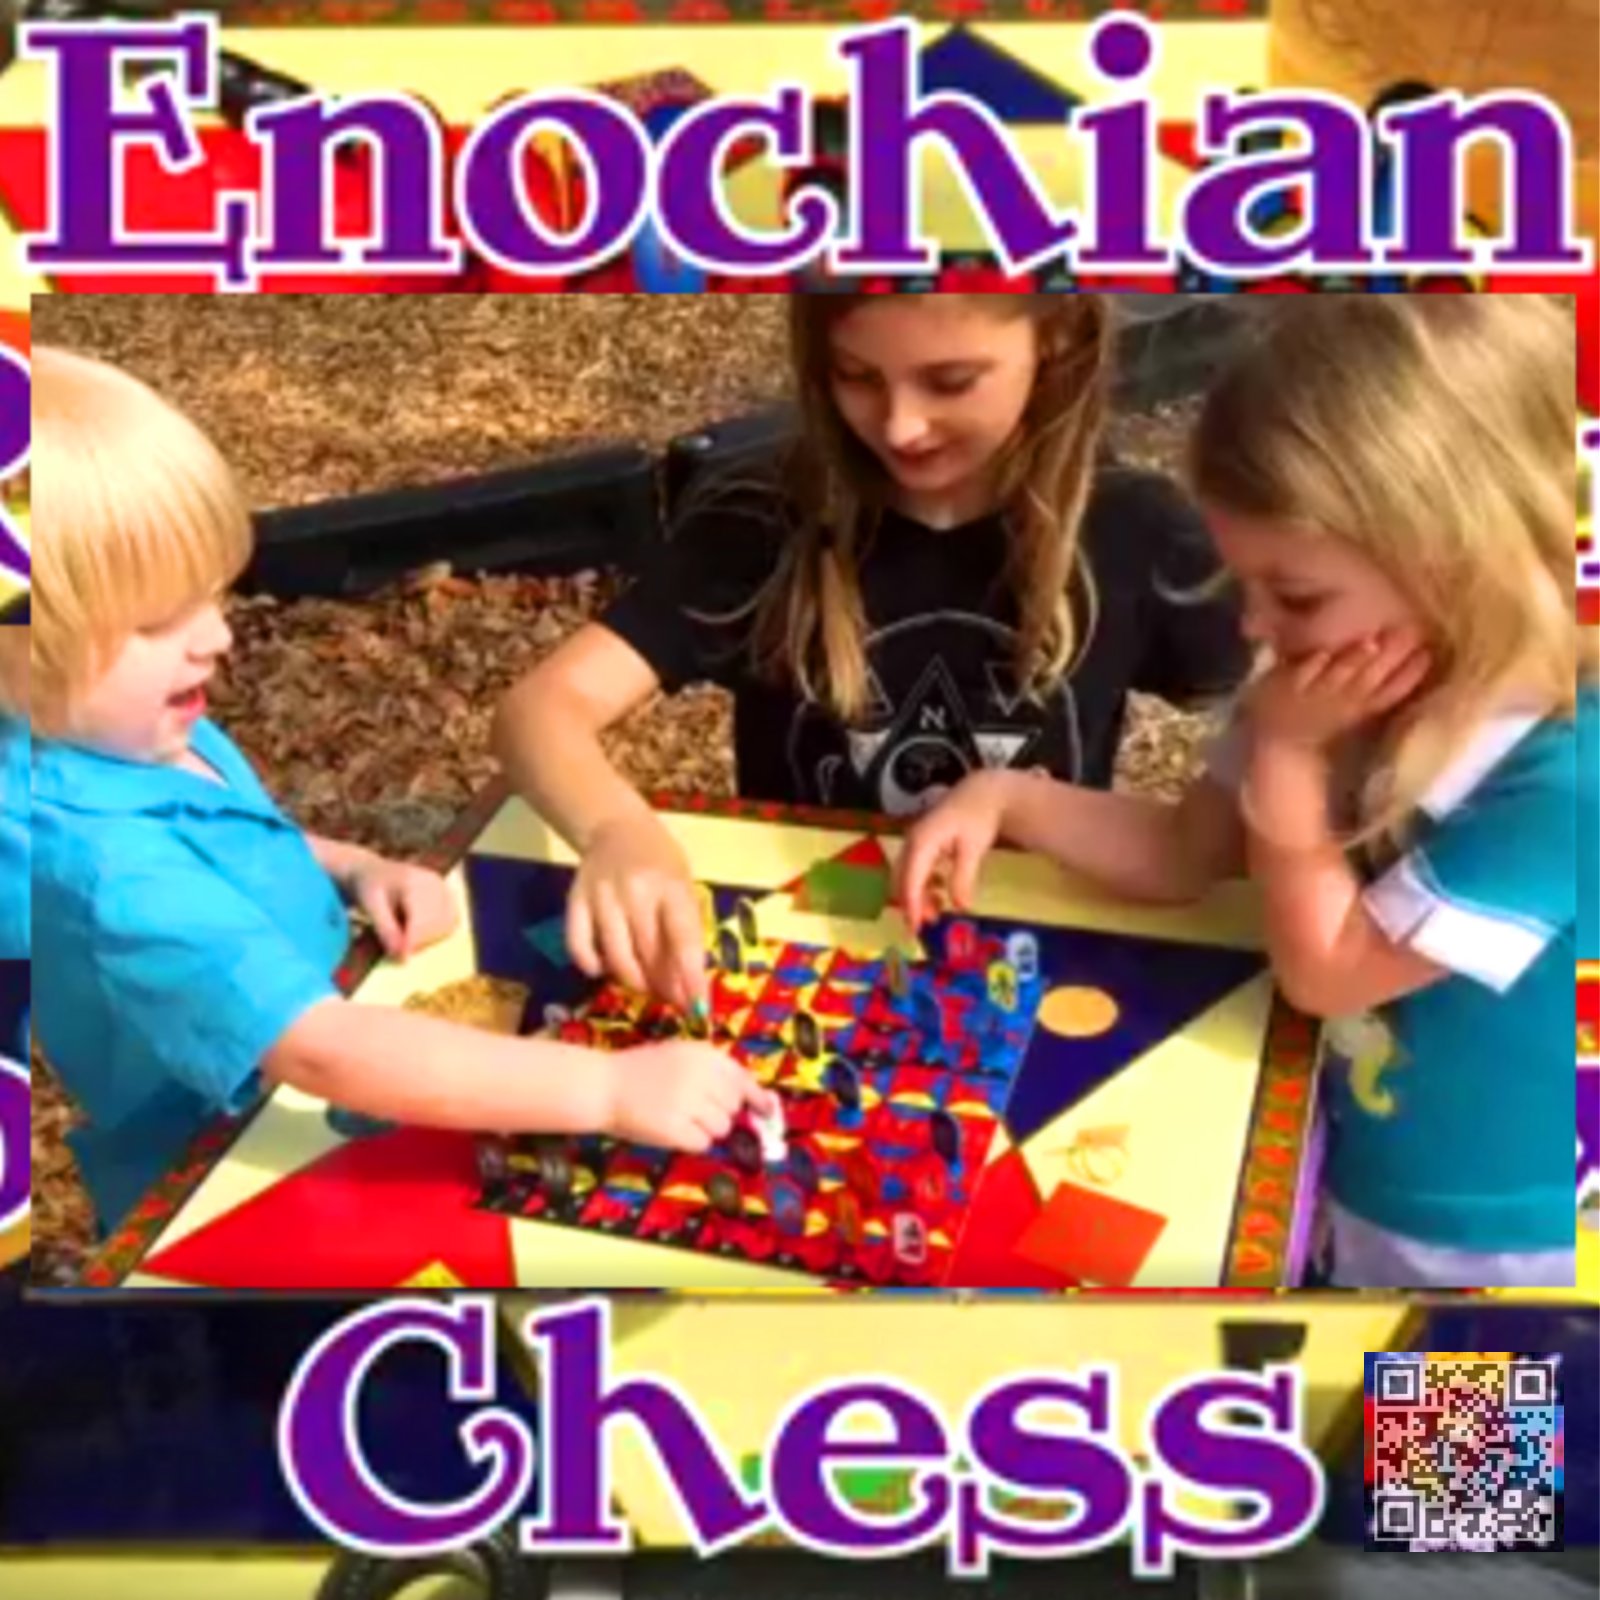 jason agustus newcomb enochian chess